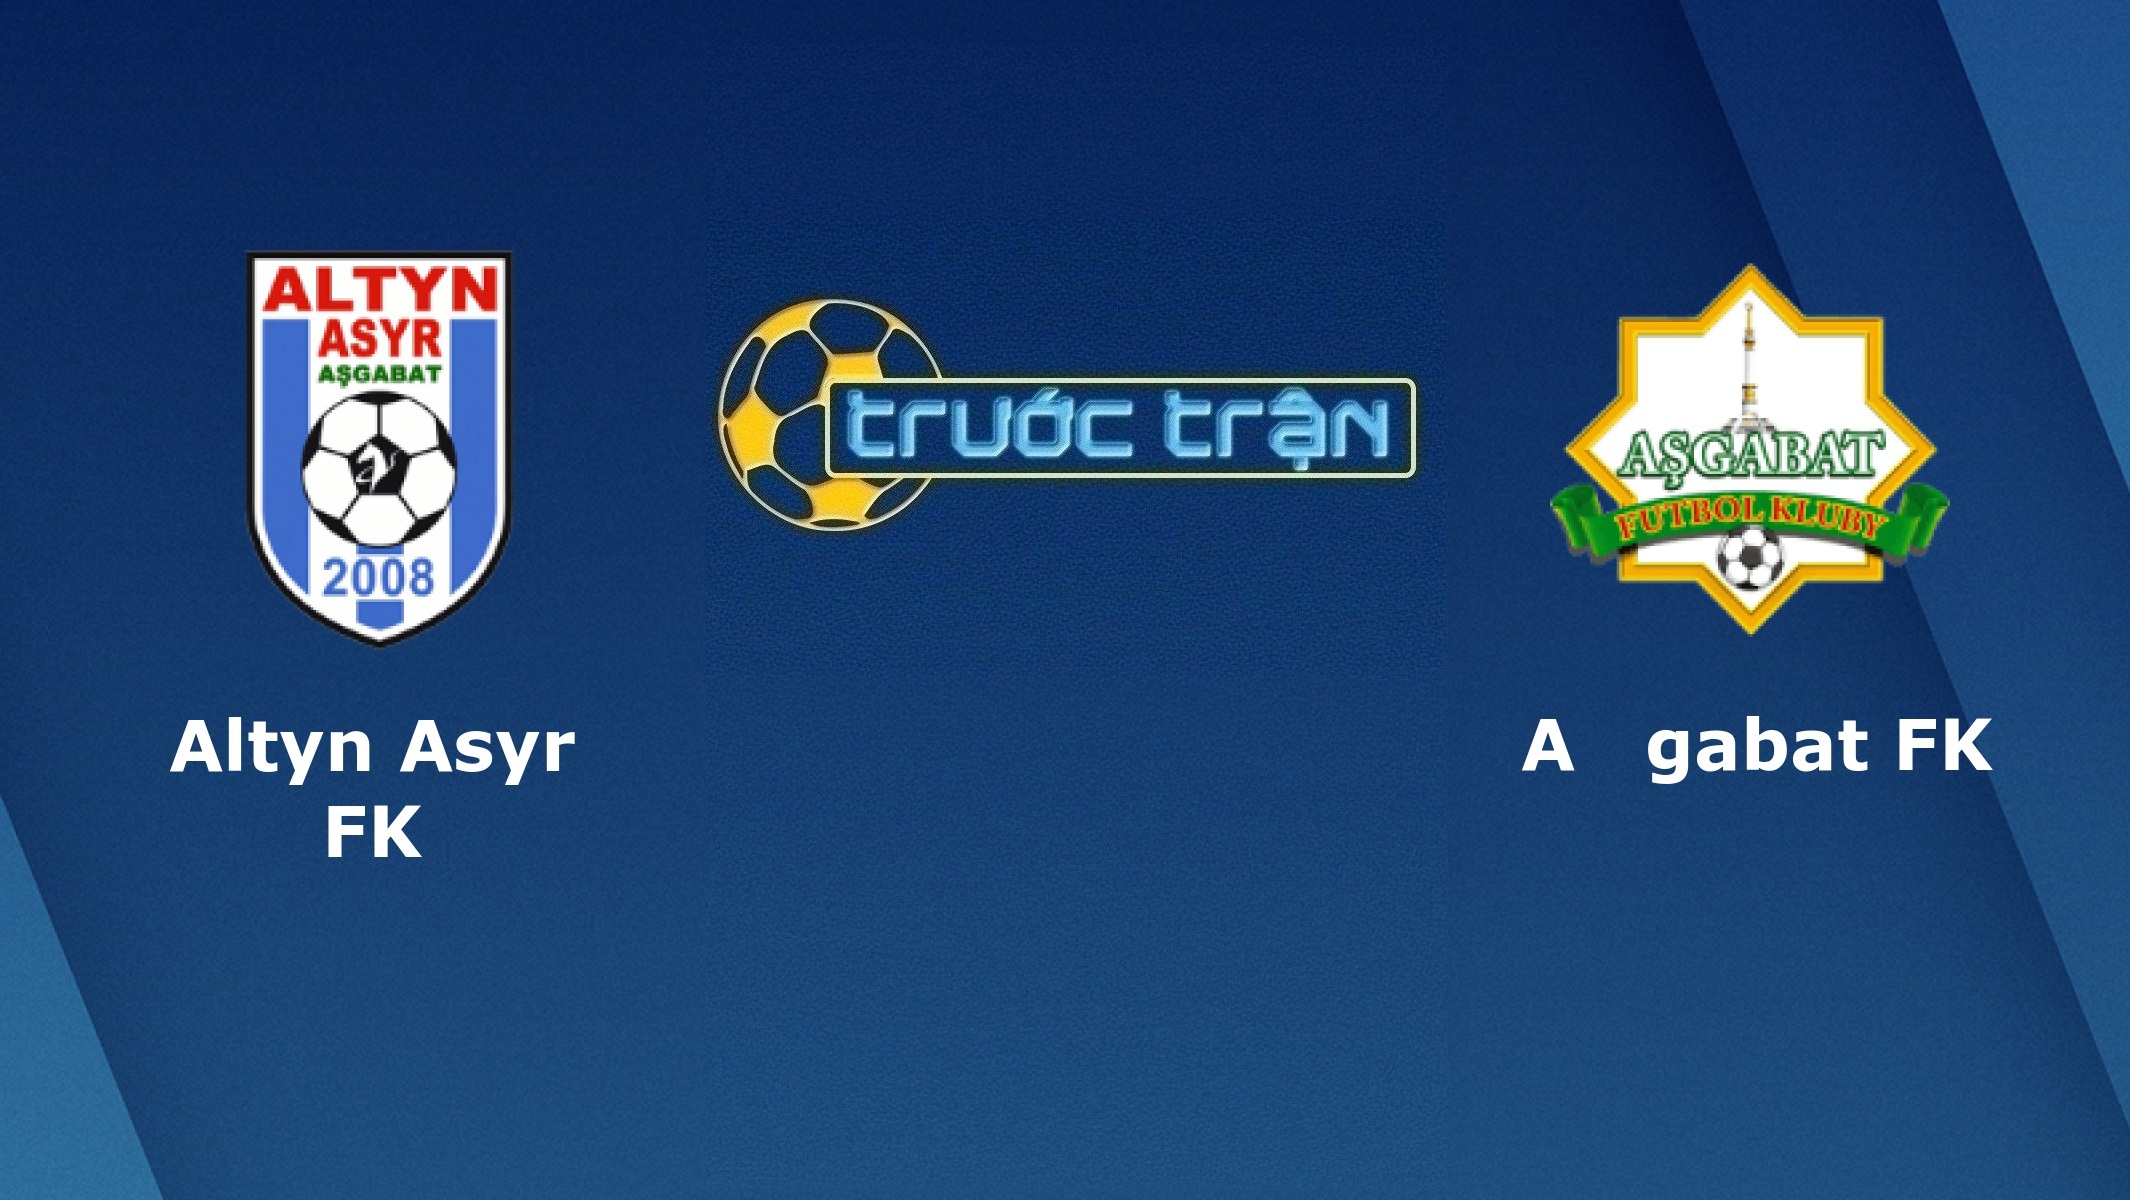 FC Altyn Asyr vs Asgabat – Tip kèo bóng đá hôm nay – 04/05